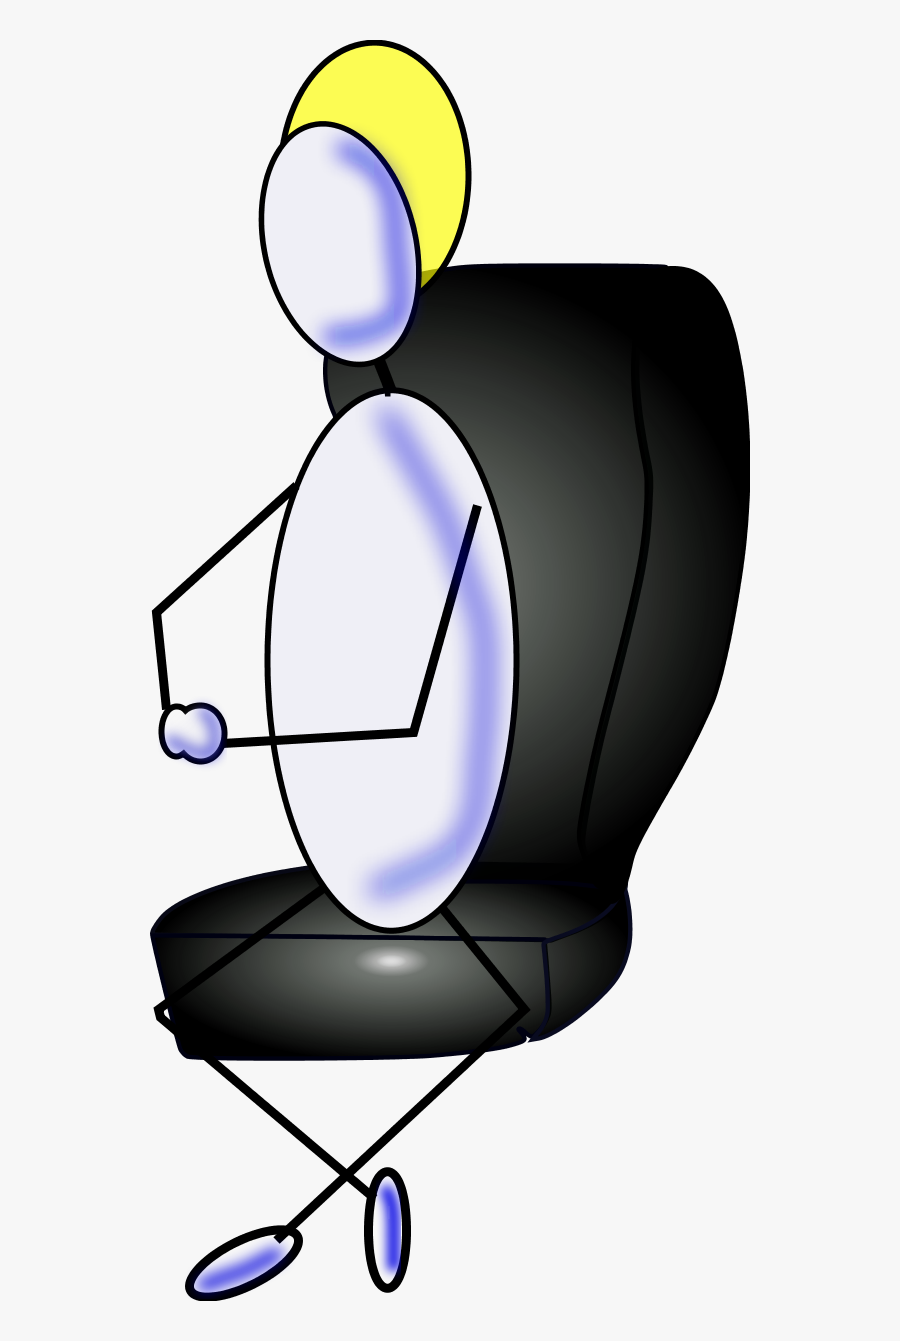 Man Sitting Chair Cartoon - Man Sitting On A Chaircartoon Vector, Transparent Clipart